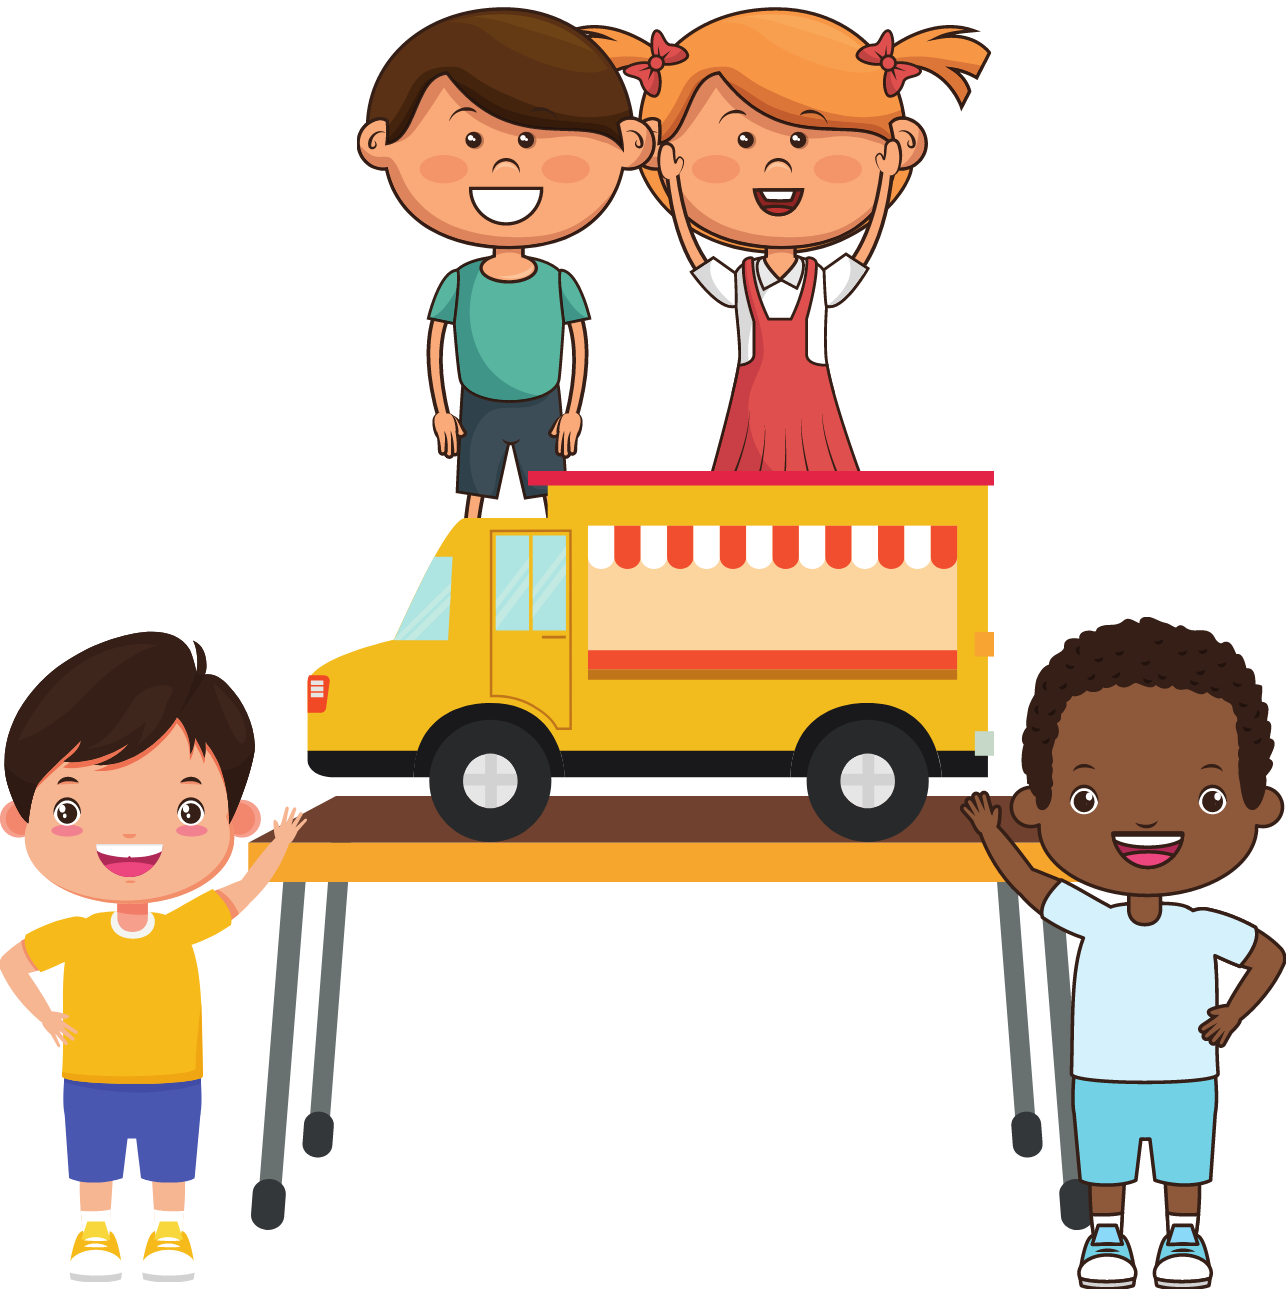 En la imagen se ve un grupo de 4 niños y niñas que están mostrando a los demás el food truck que han elaborado